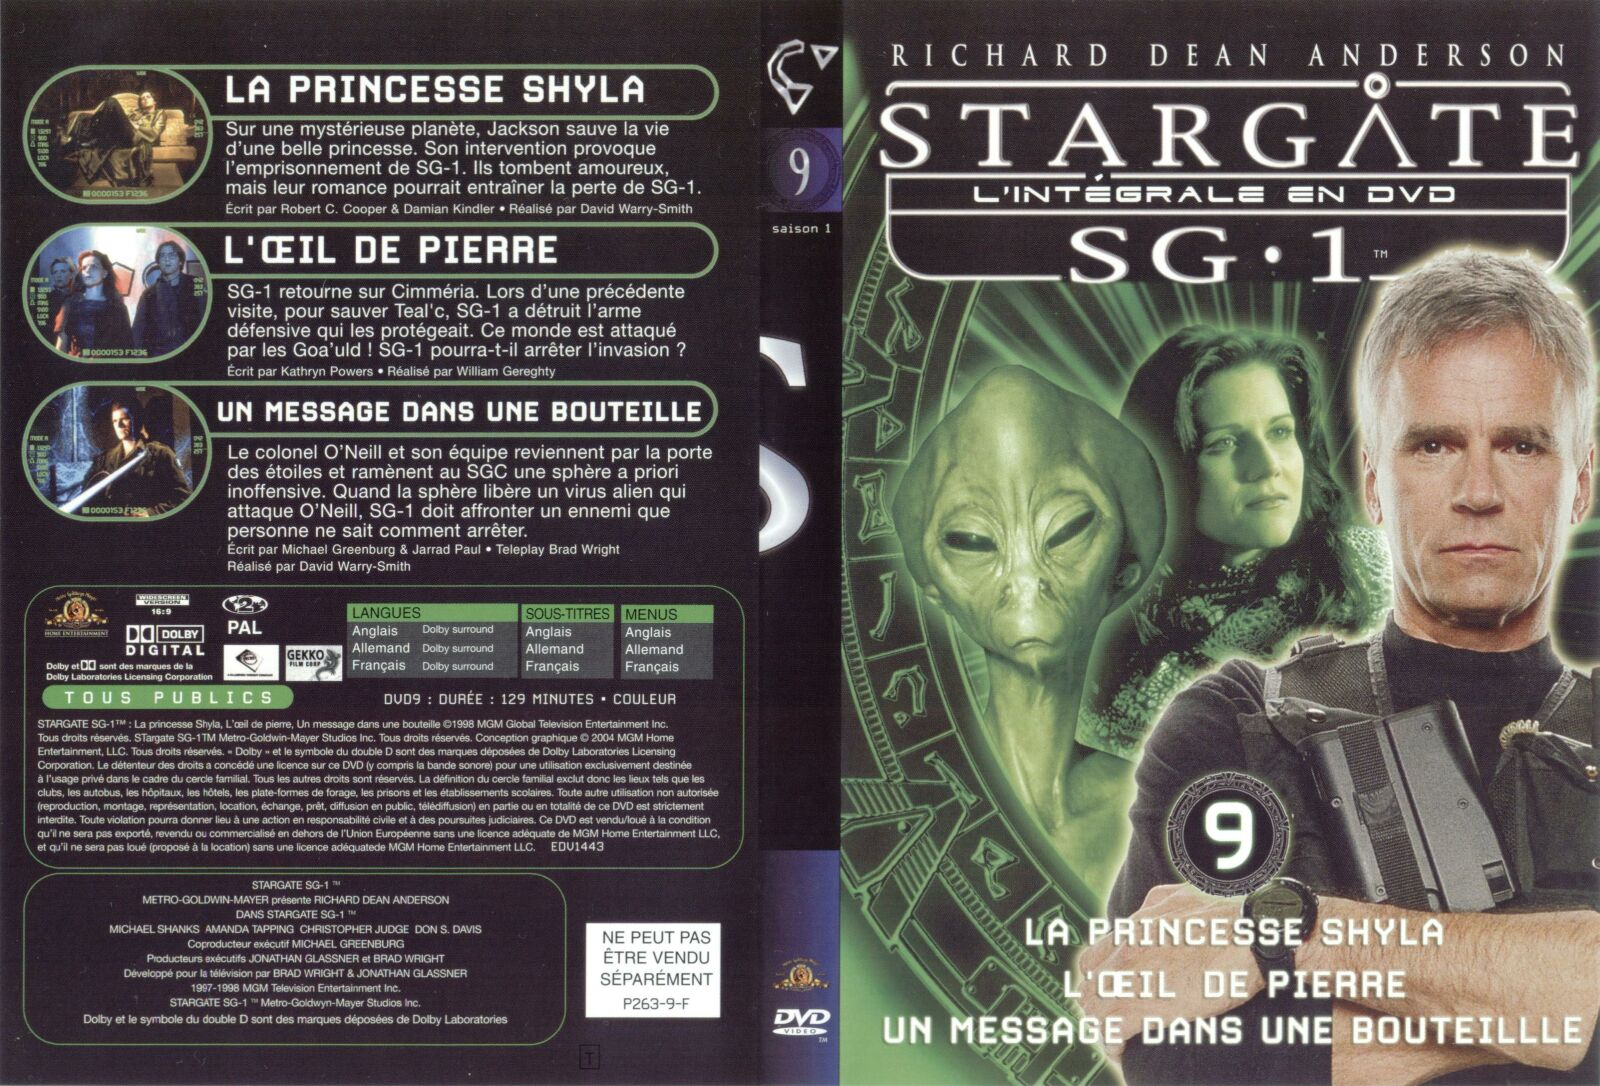 Jaquette DVD Stargate saison 2 vol 9